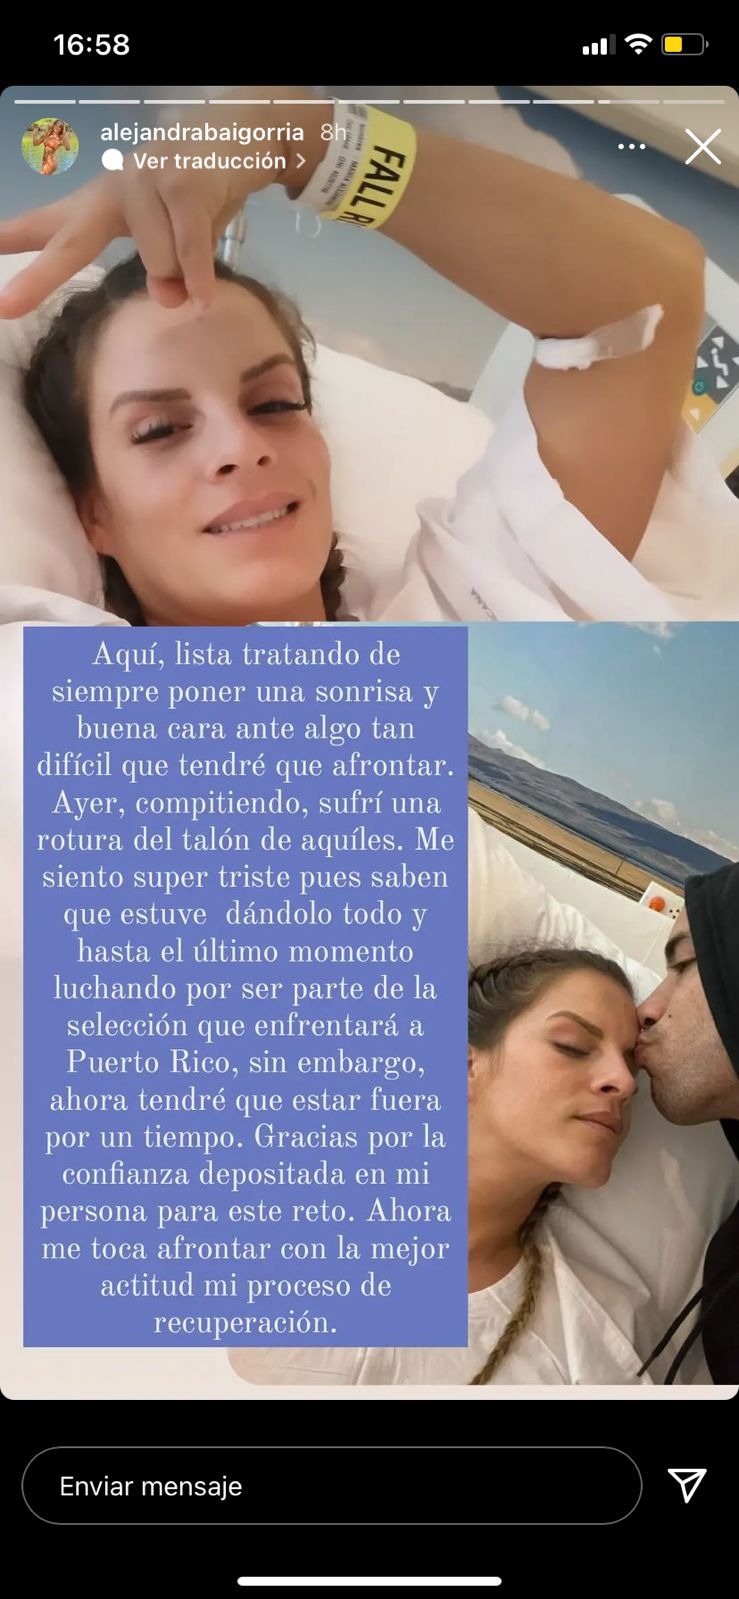 Alejandra Baigorria comunica su alejamiento de EEG por rotura de talón 